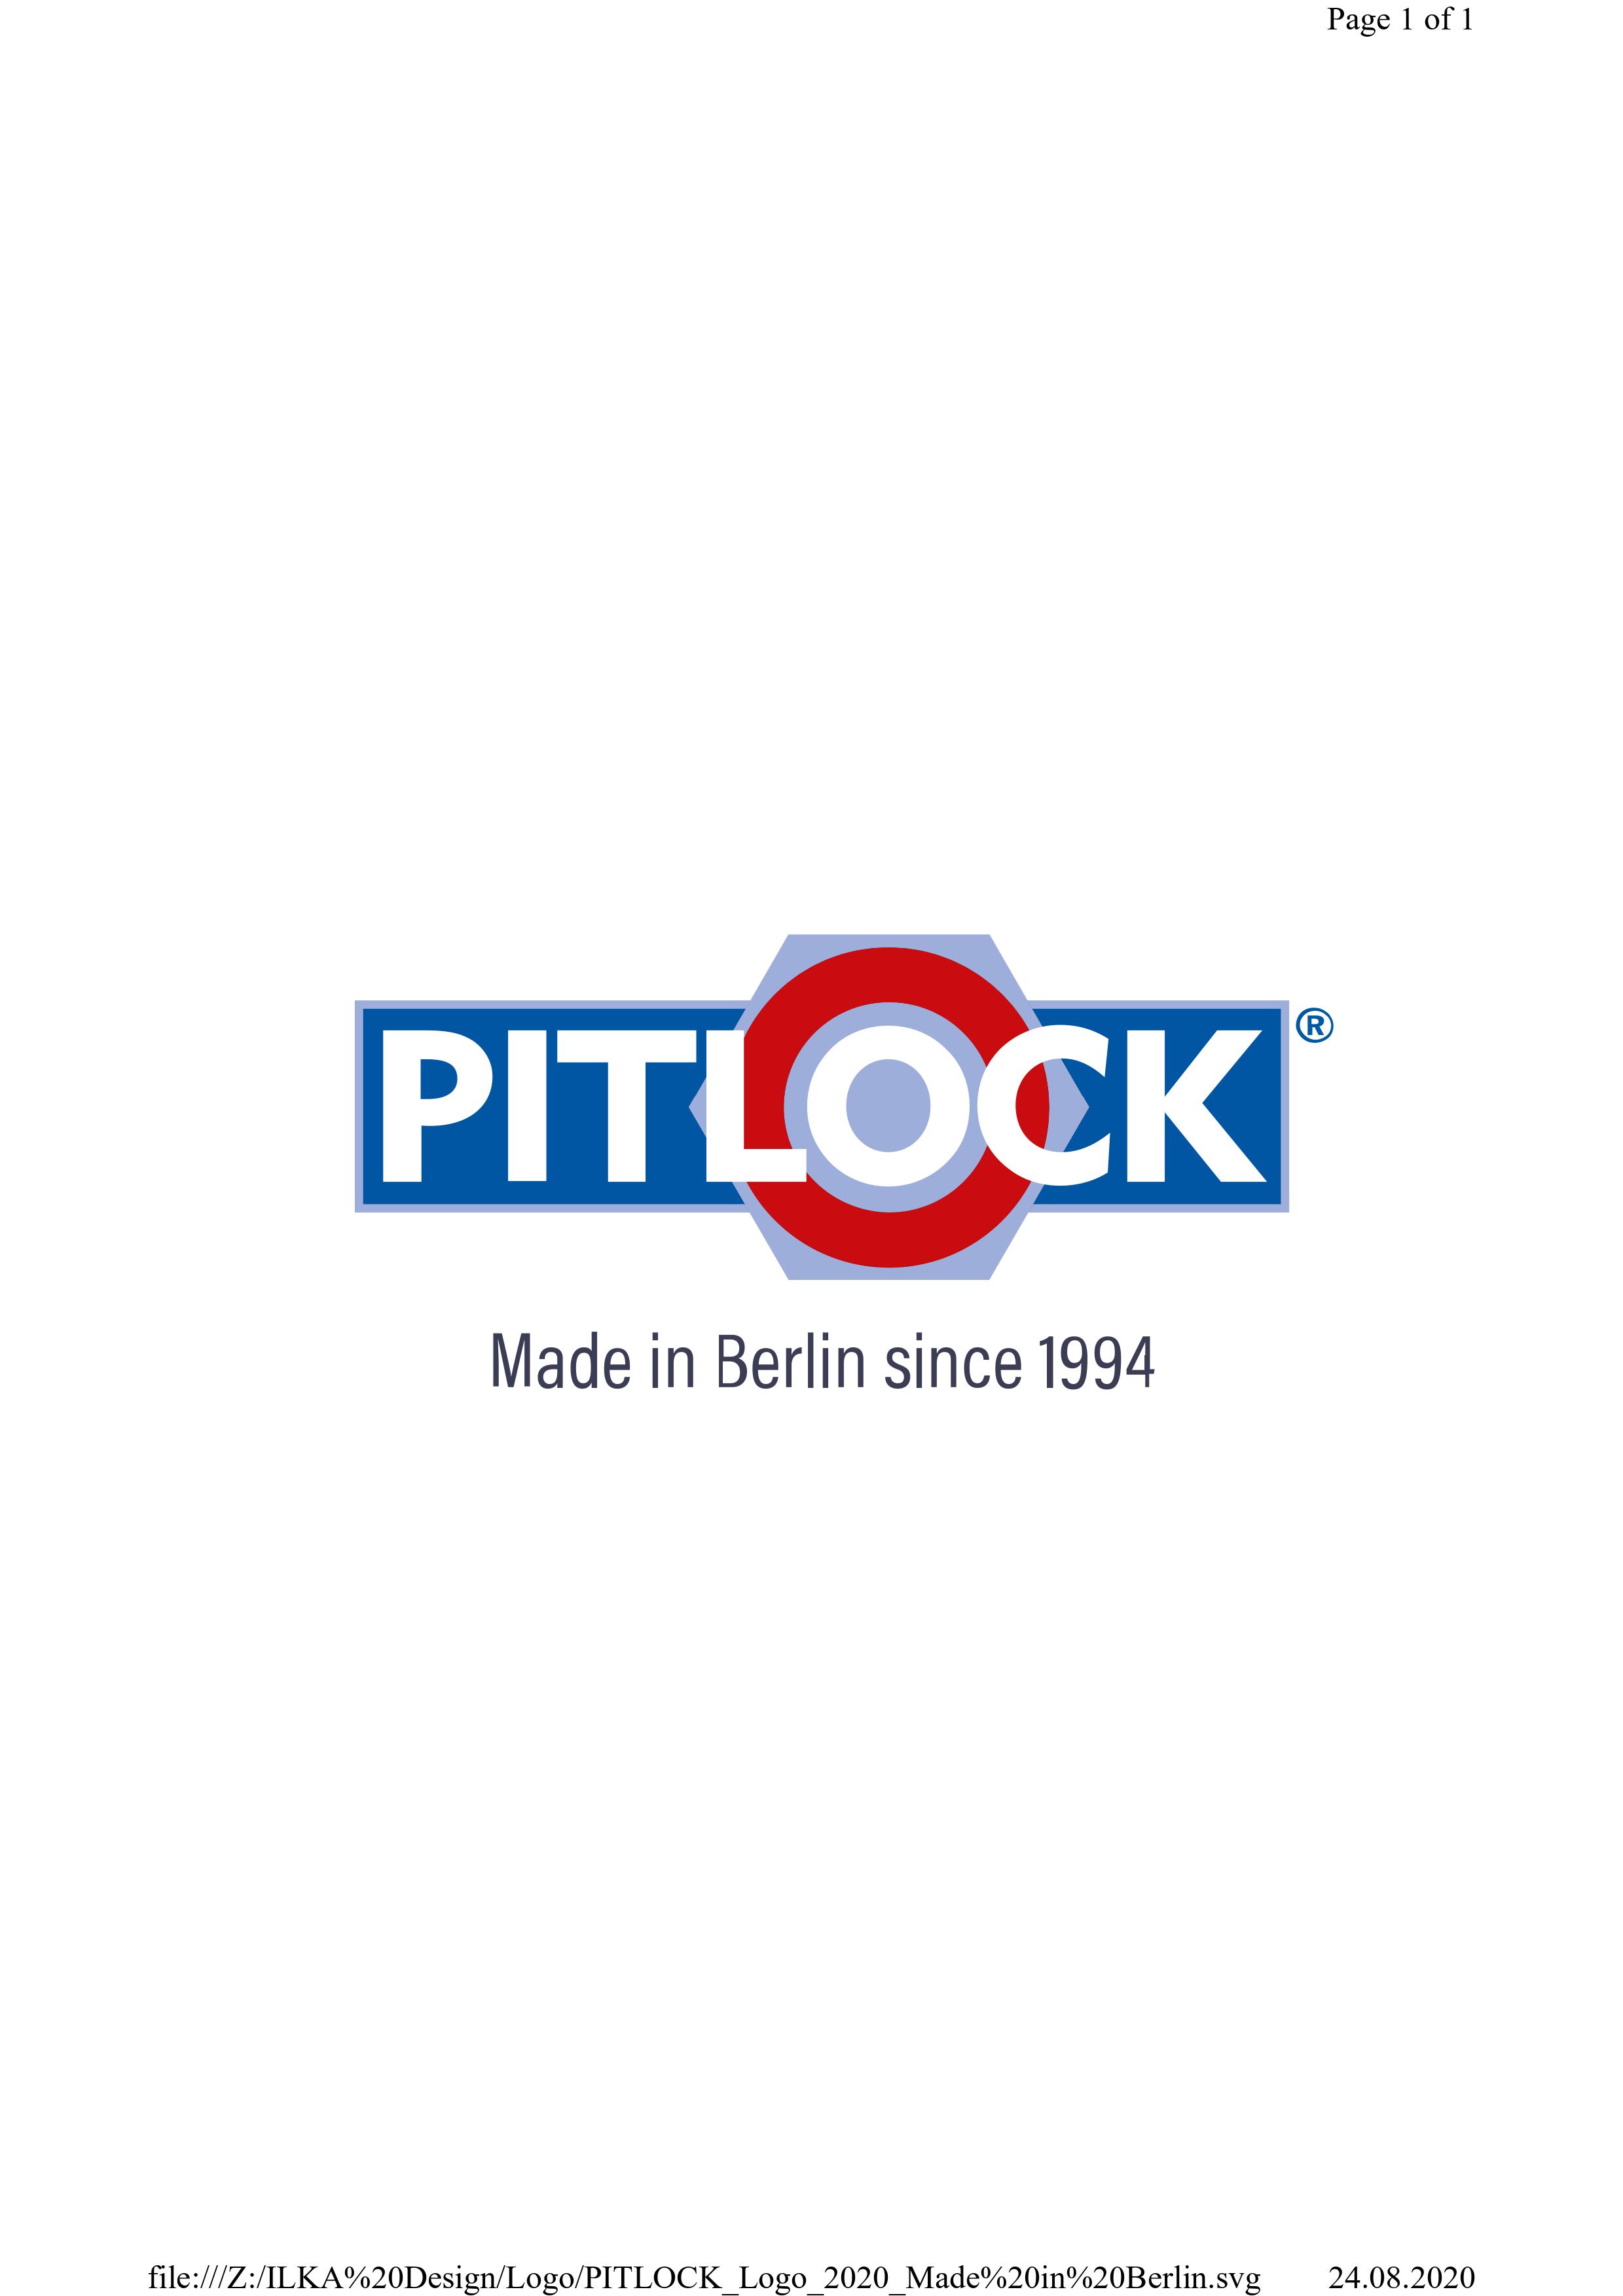 Pitlock/Busse-Sicherheitstech